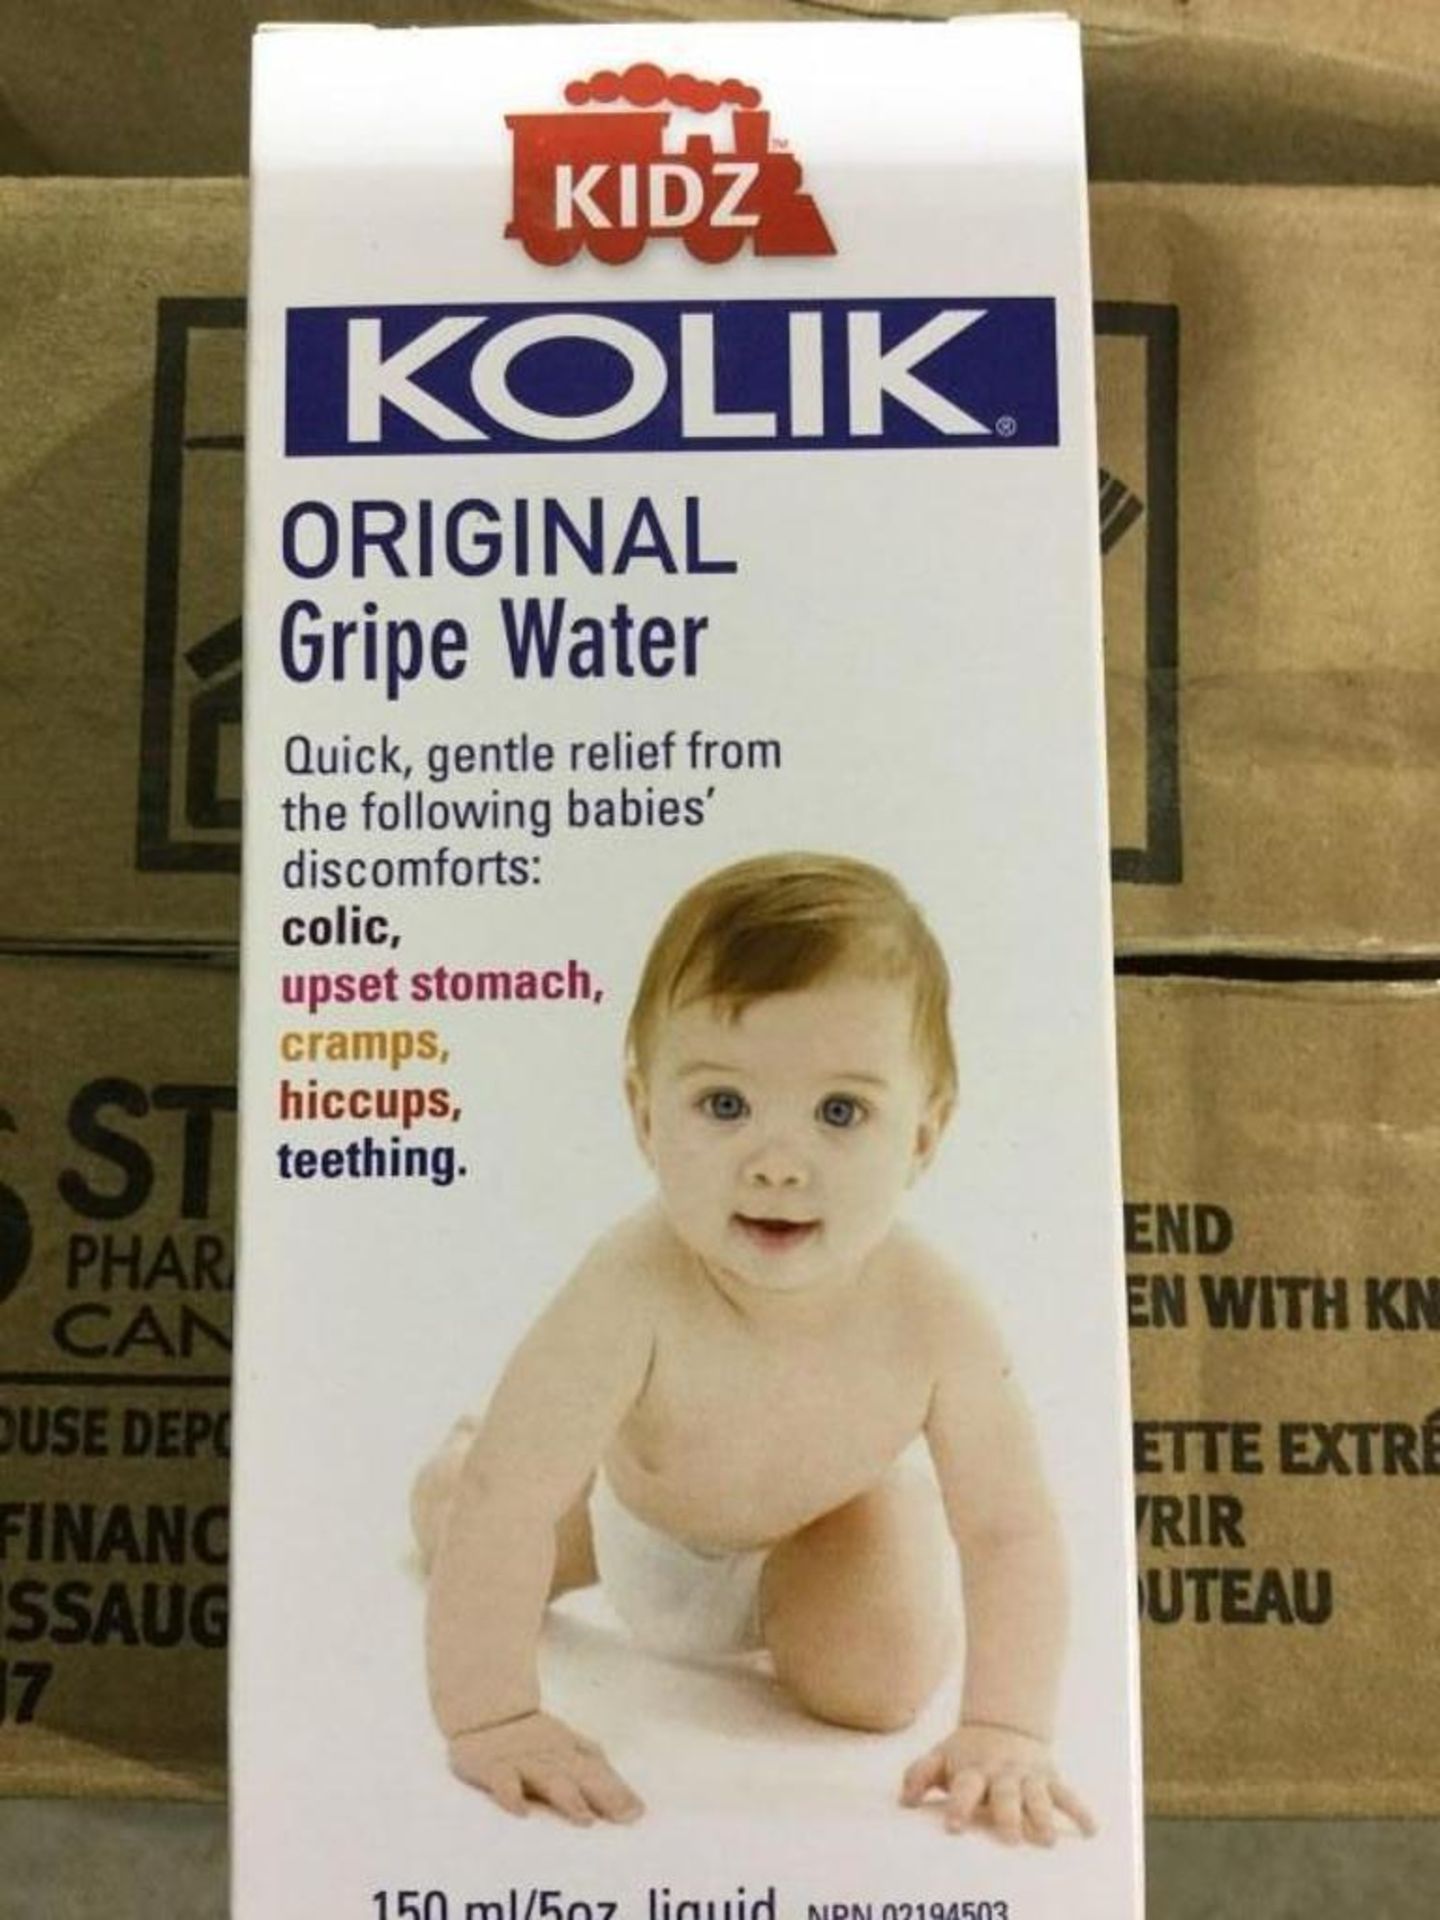 Case of Kolik Original Gripe Water